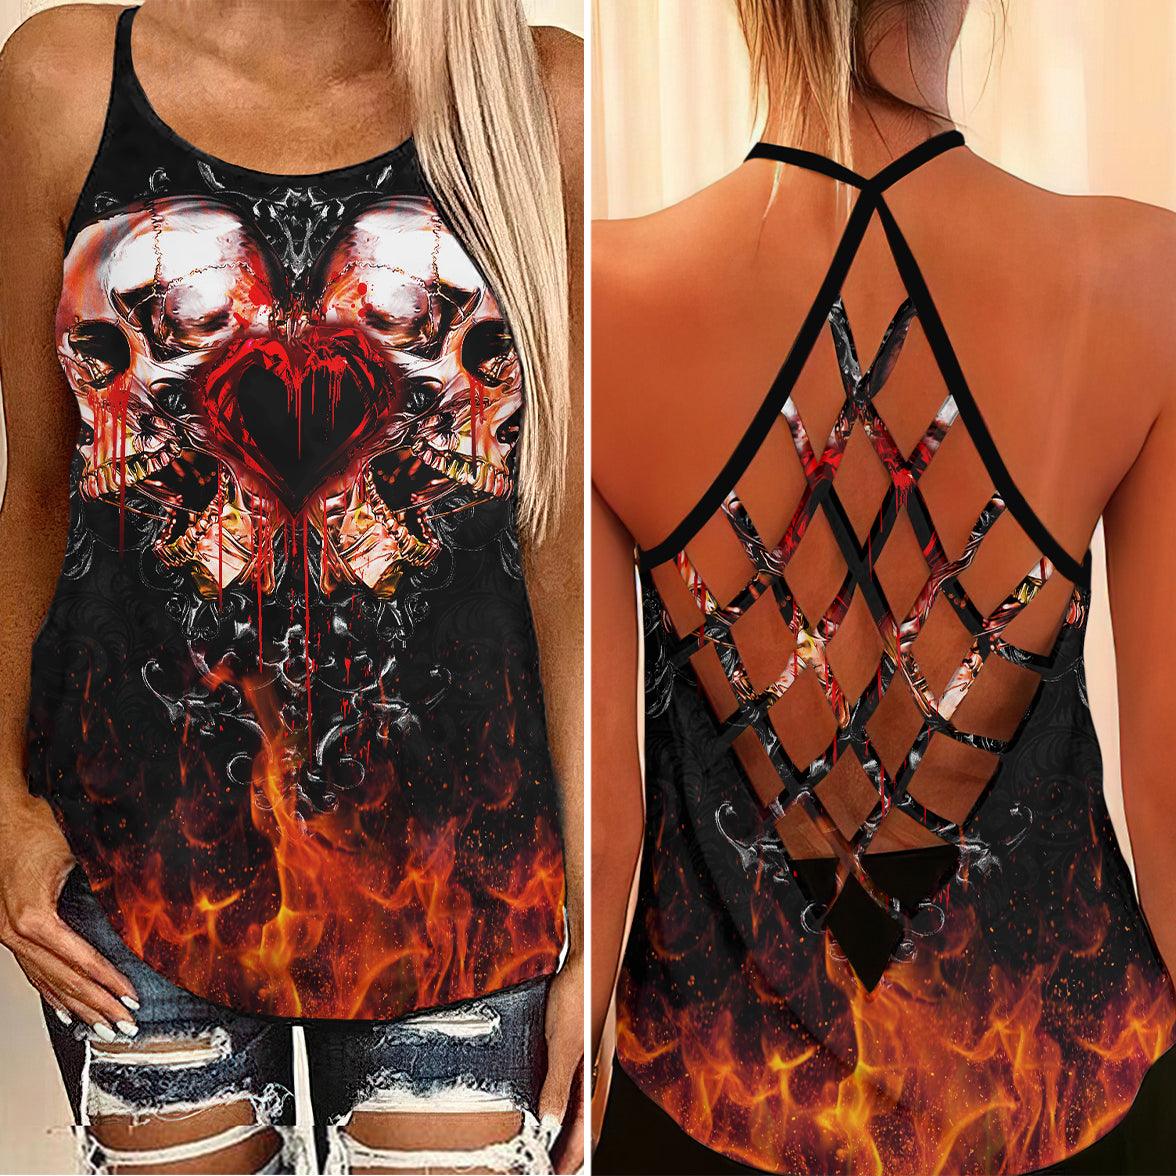 Gothic Skull Fire Criss-Cross Open Back Tank Top, Hot T-Shirt For Women - Wonder Skull